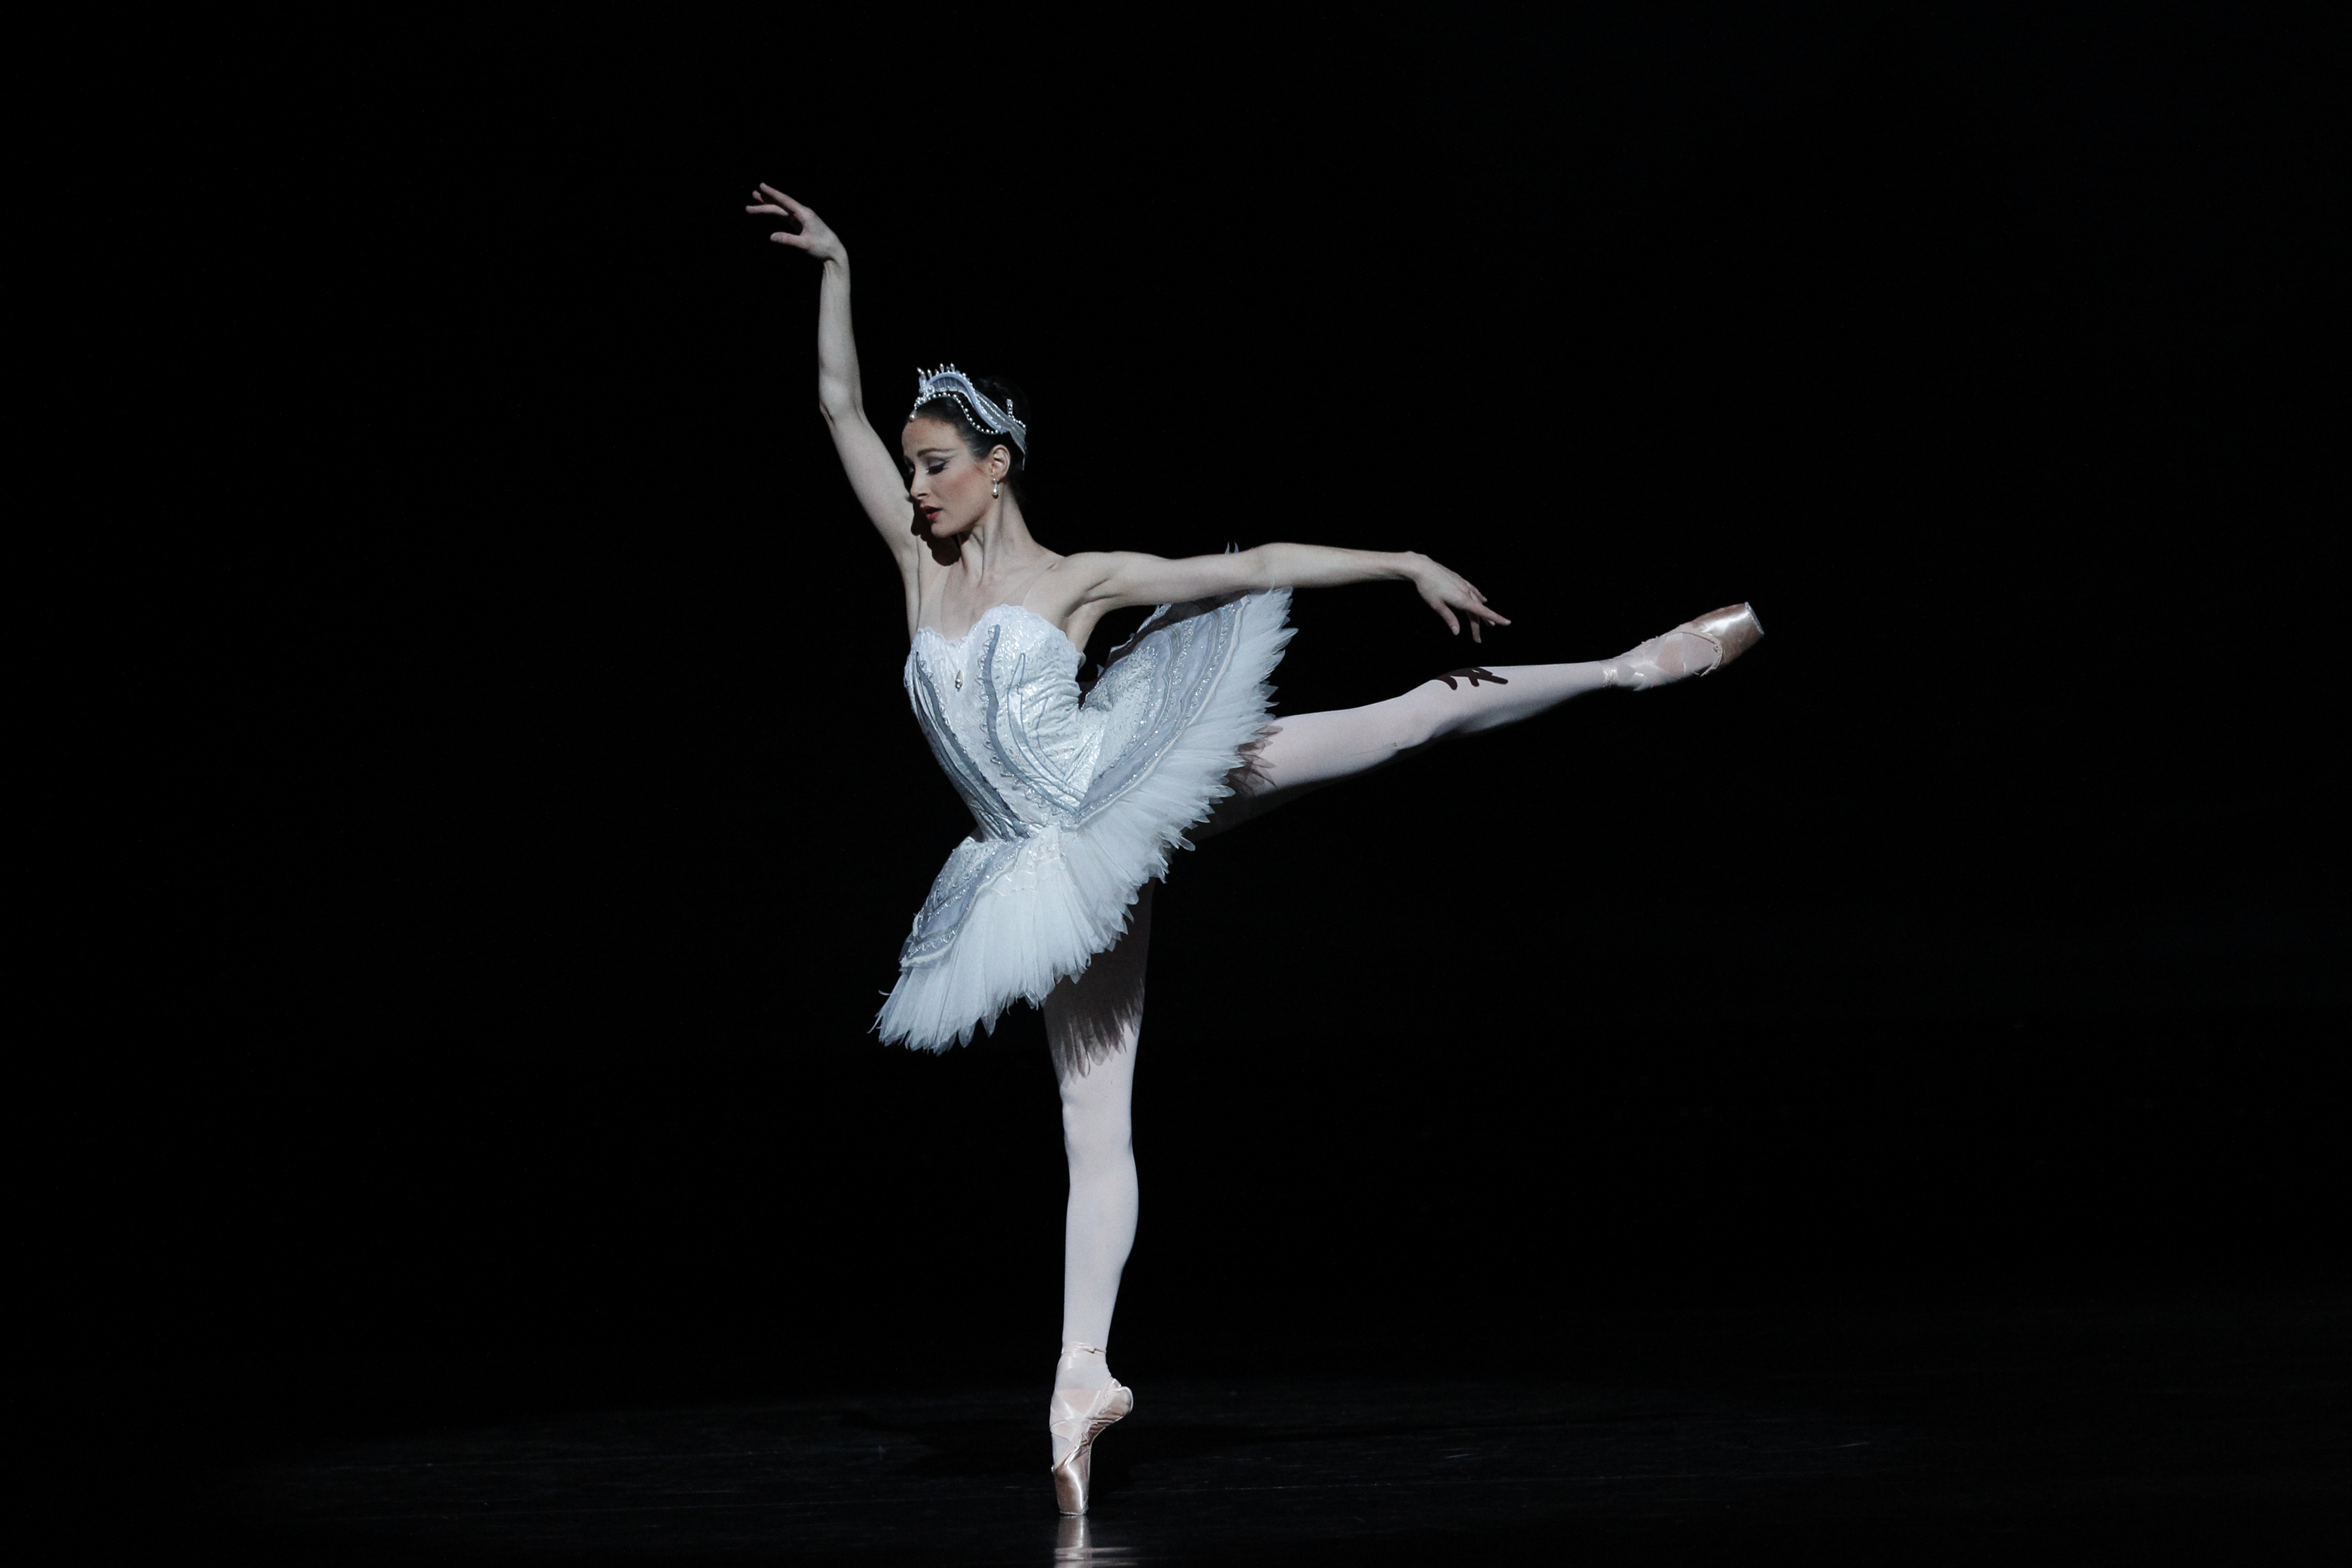 芭蕾舞剧《睡美人》2015年9月27日在克林姆林宫 - 舞蹈图片 - Powered by Discuz!